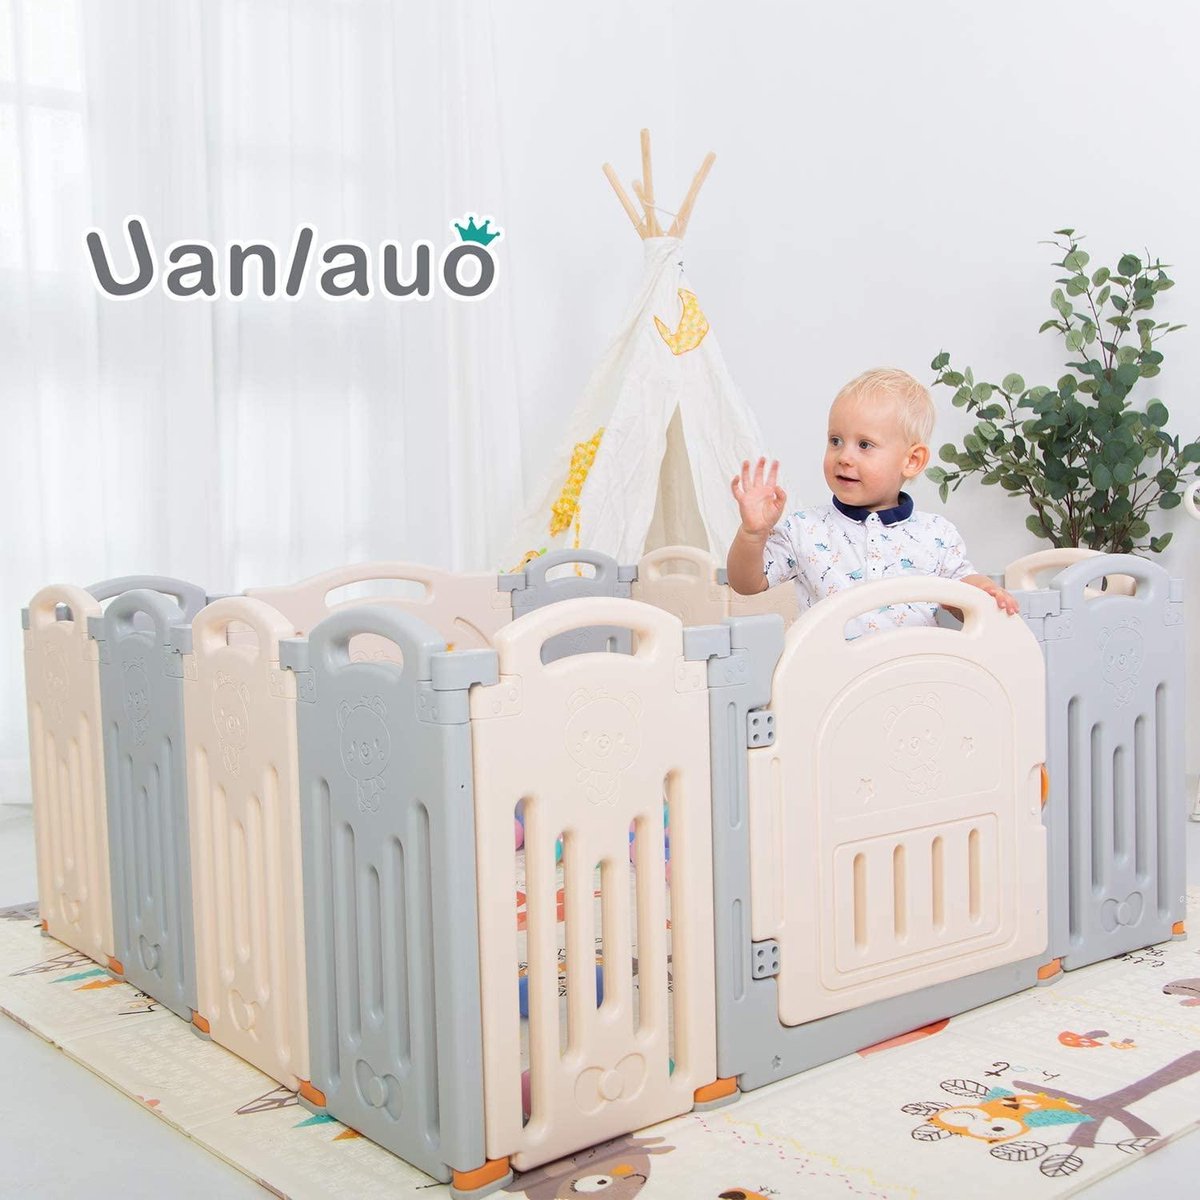 Uanlauo tapis de jeu pour bébé, grand tapis de jeu pliable et